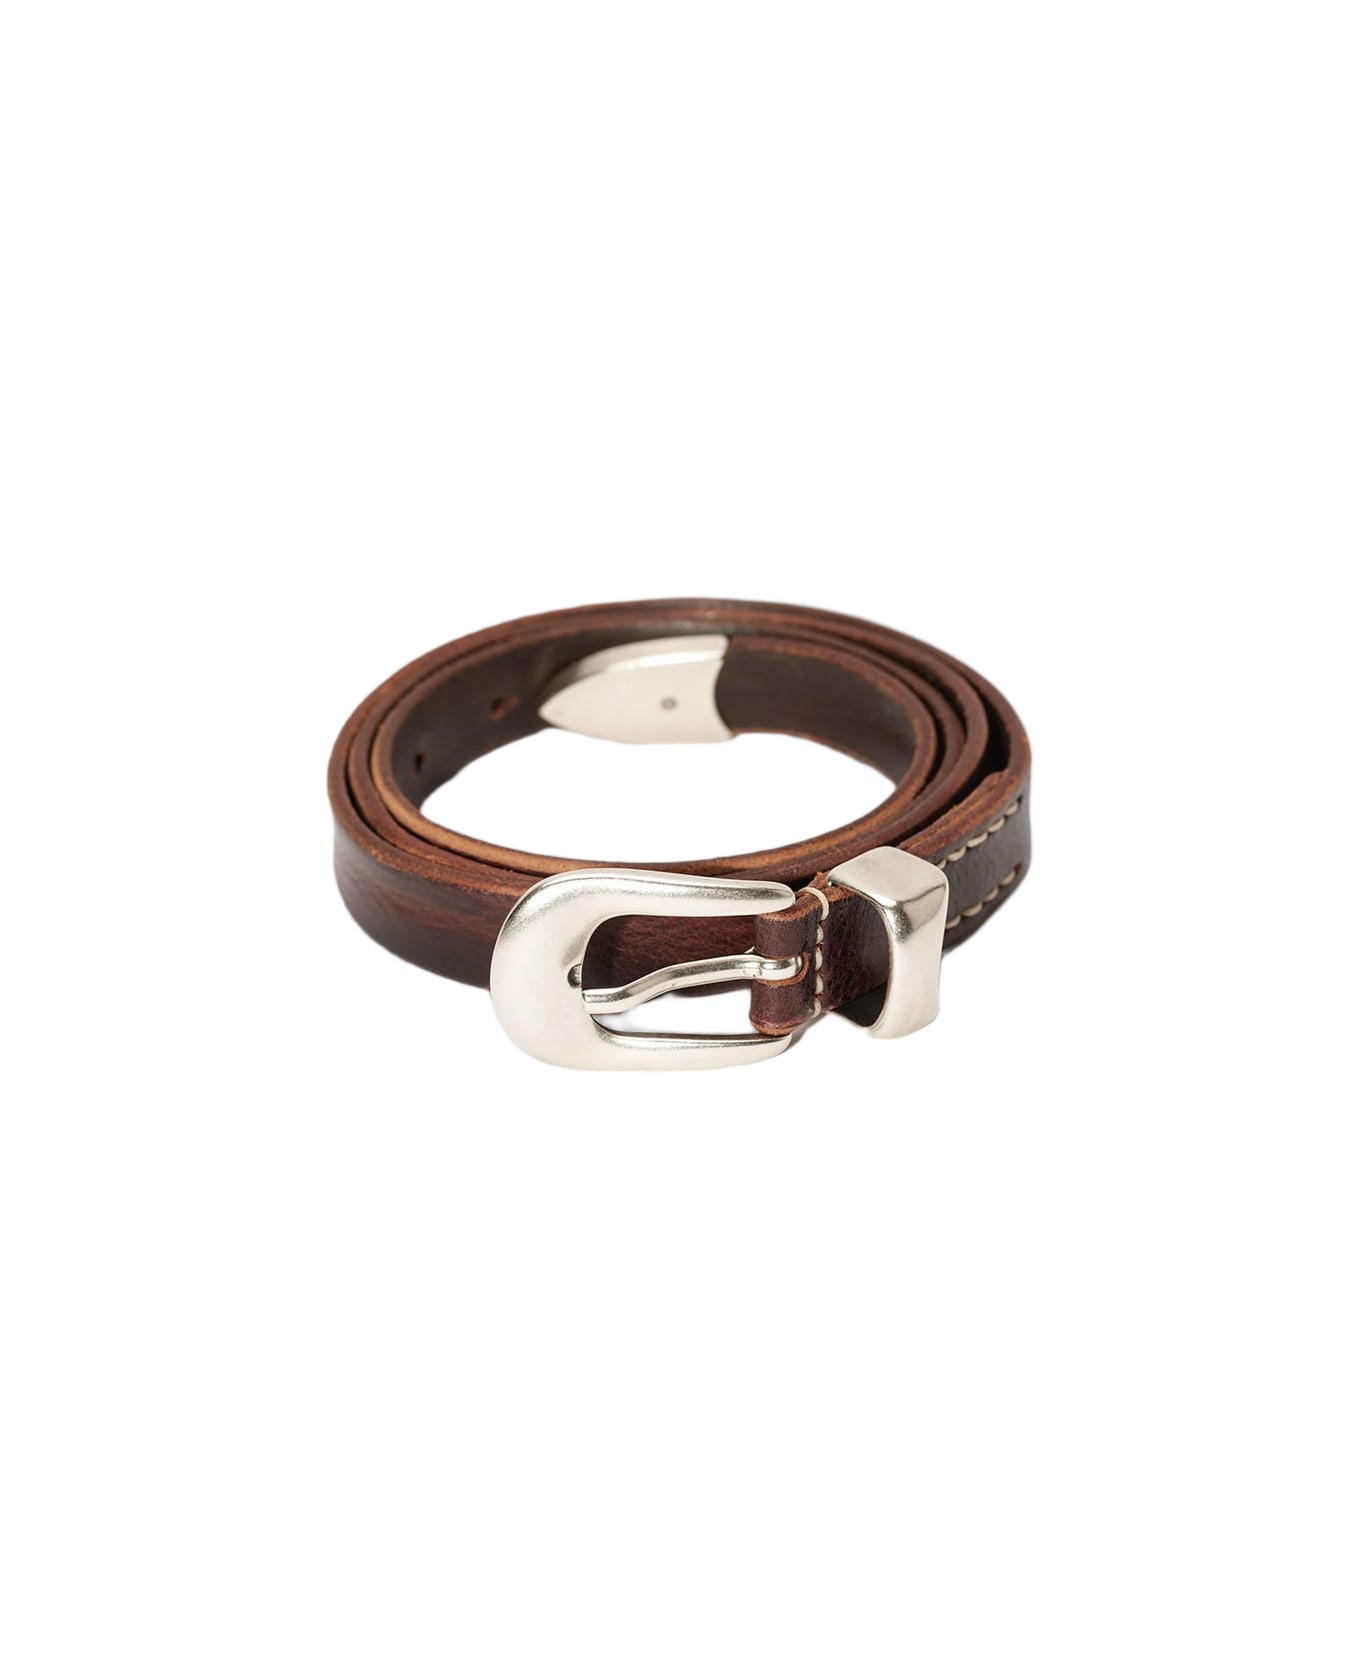 Our Legacy 2 Cm Belt Brown leather belt - 2 cm belt - Marrone name:456